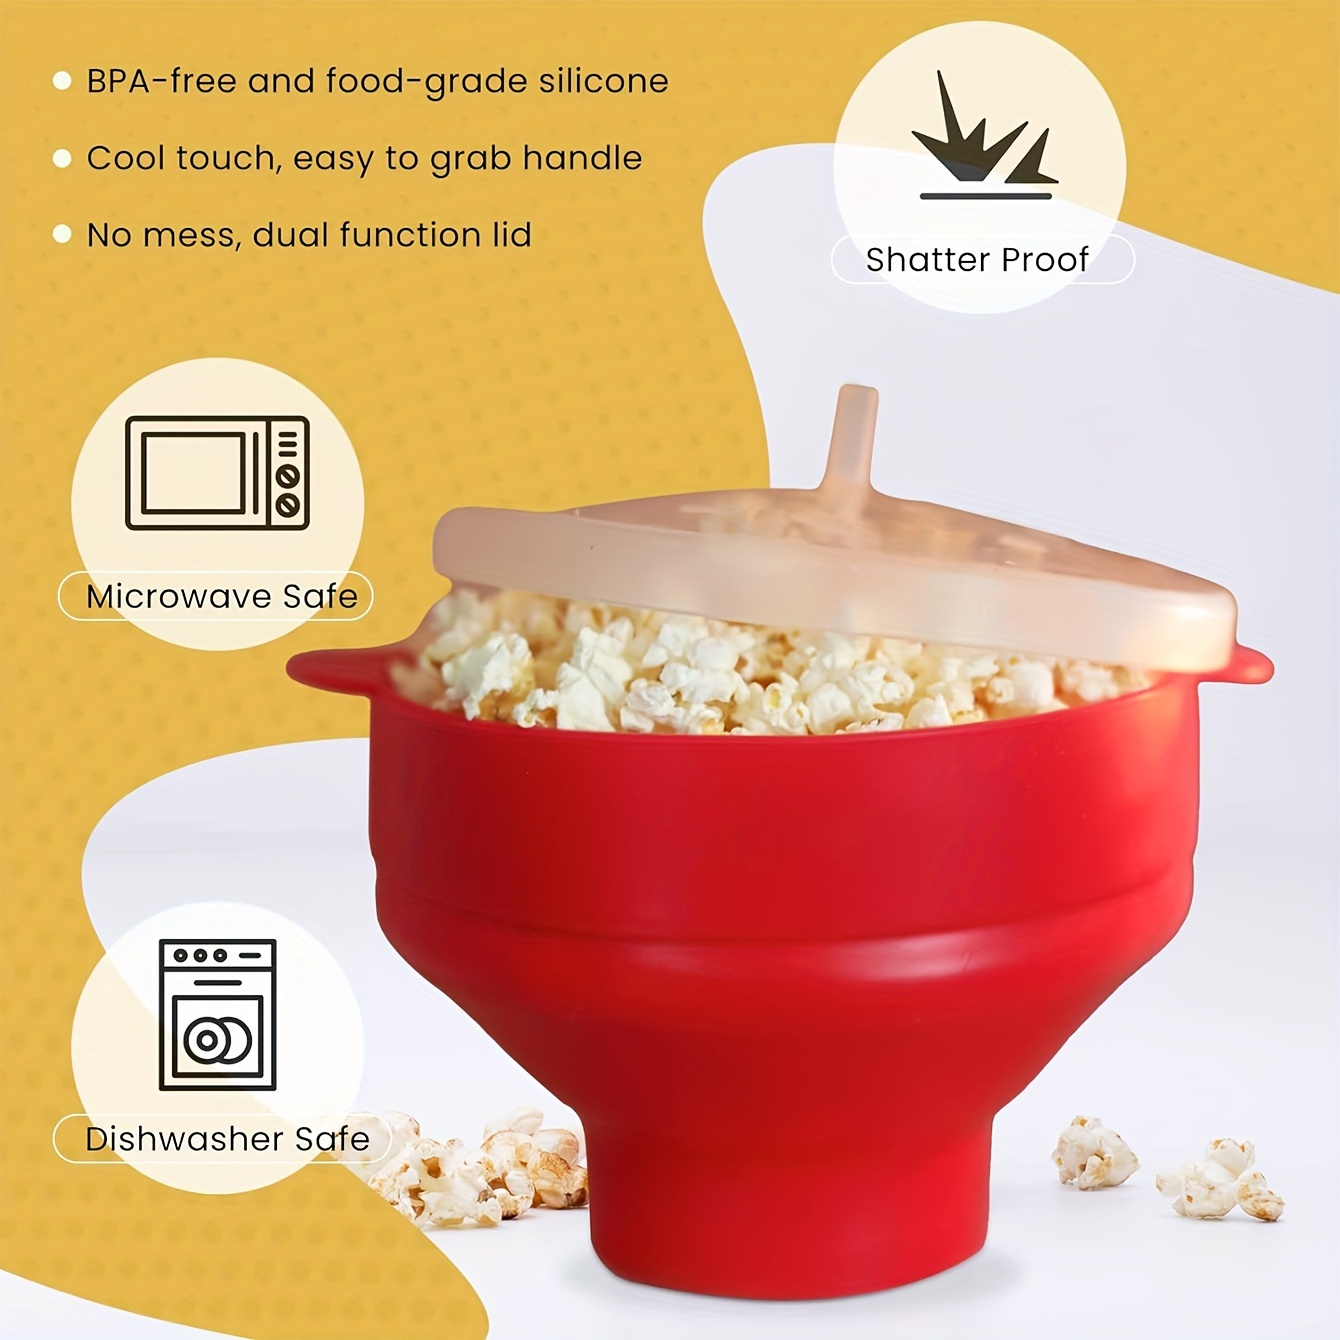 Mini Popcorn Maker Hand-cranked Cannon Corn Popper Pop Corn